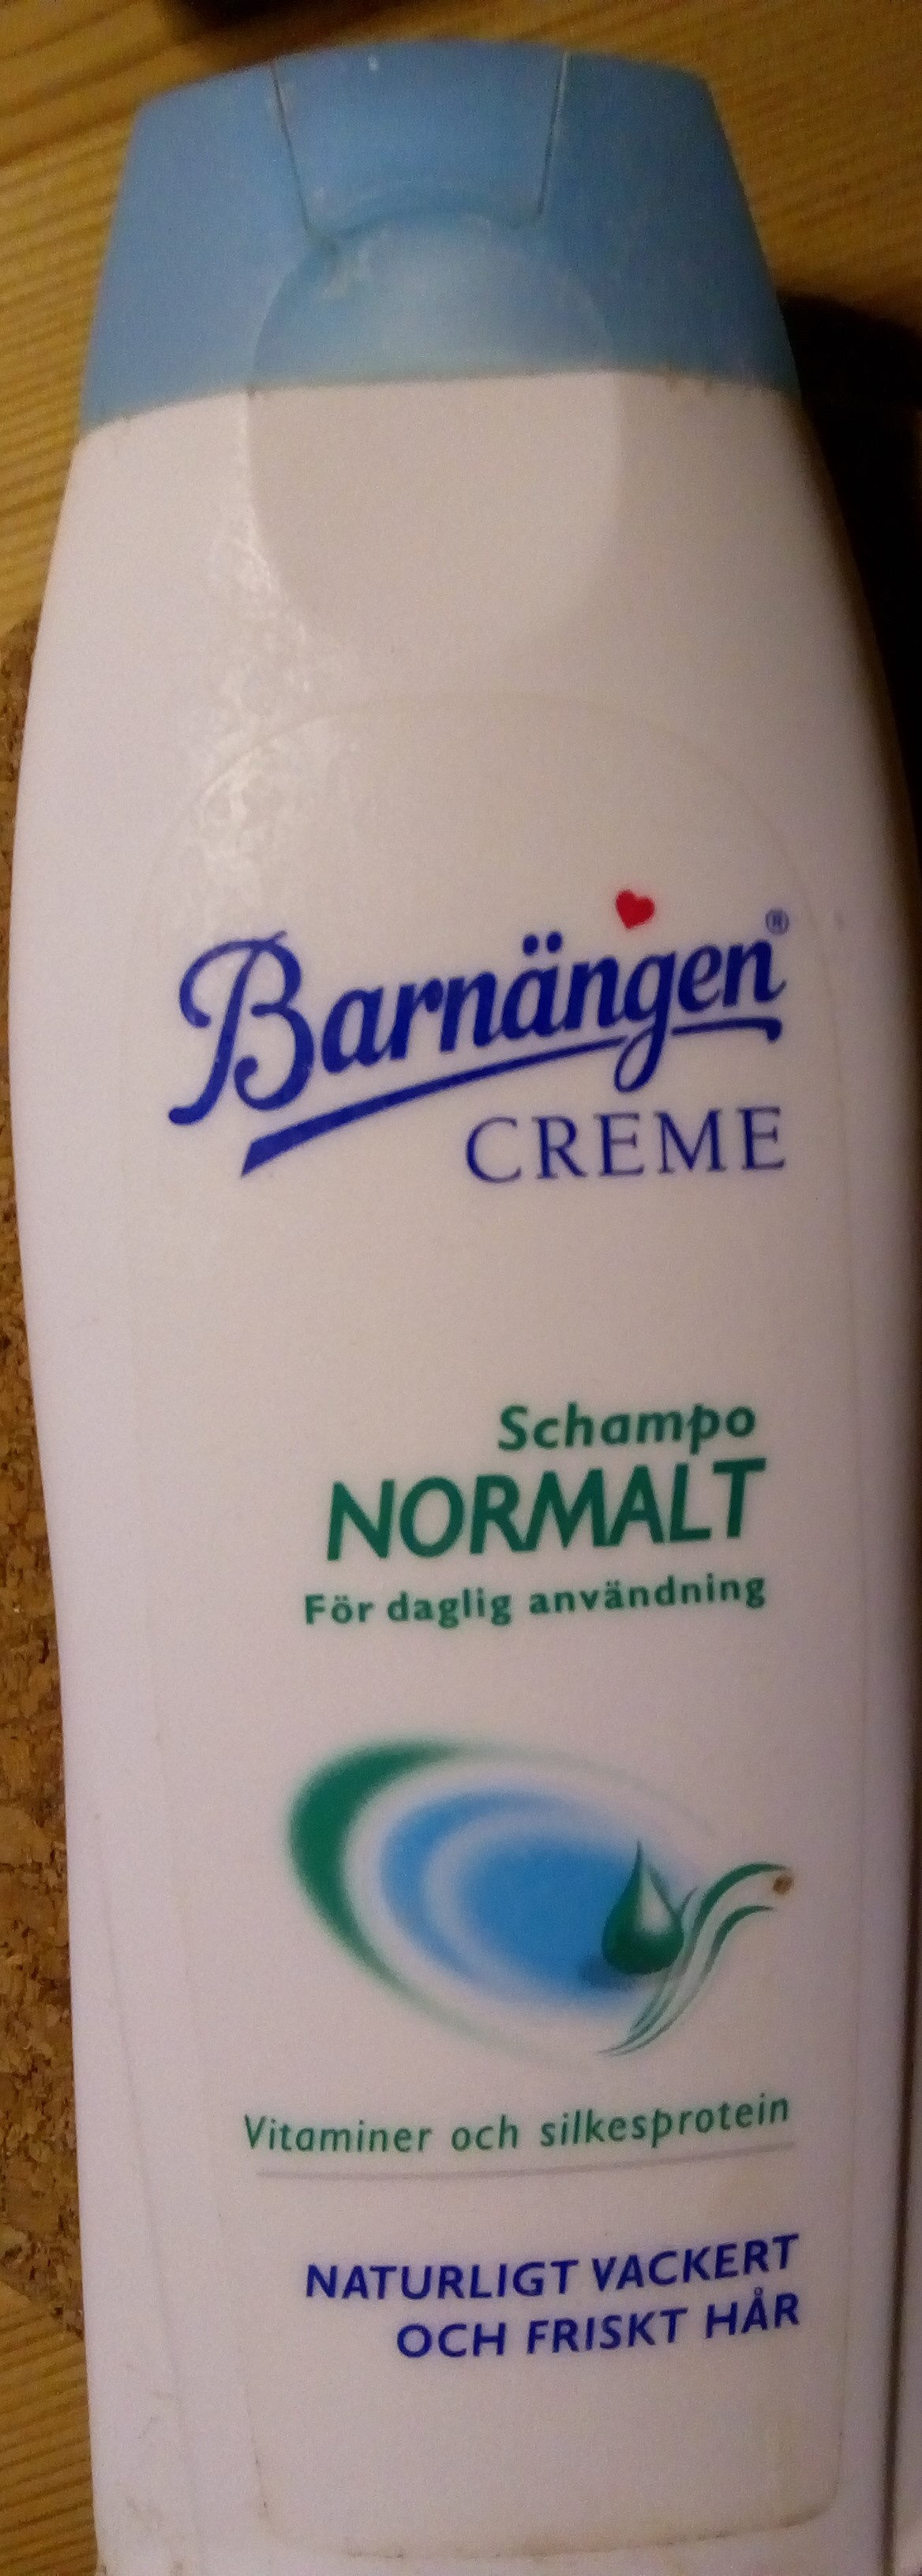 Barnängen schampo normalt - Product - sv